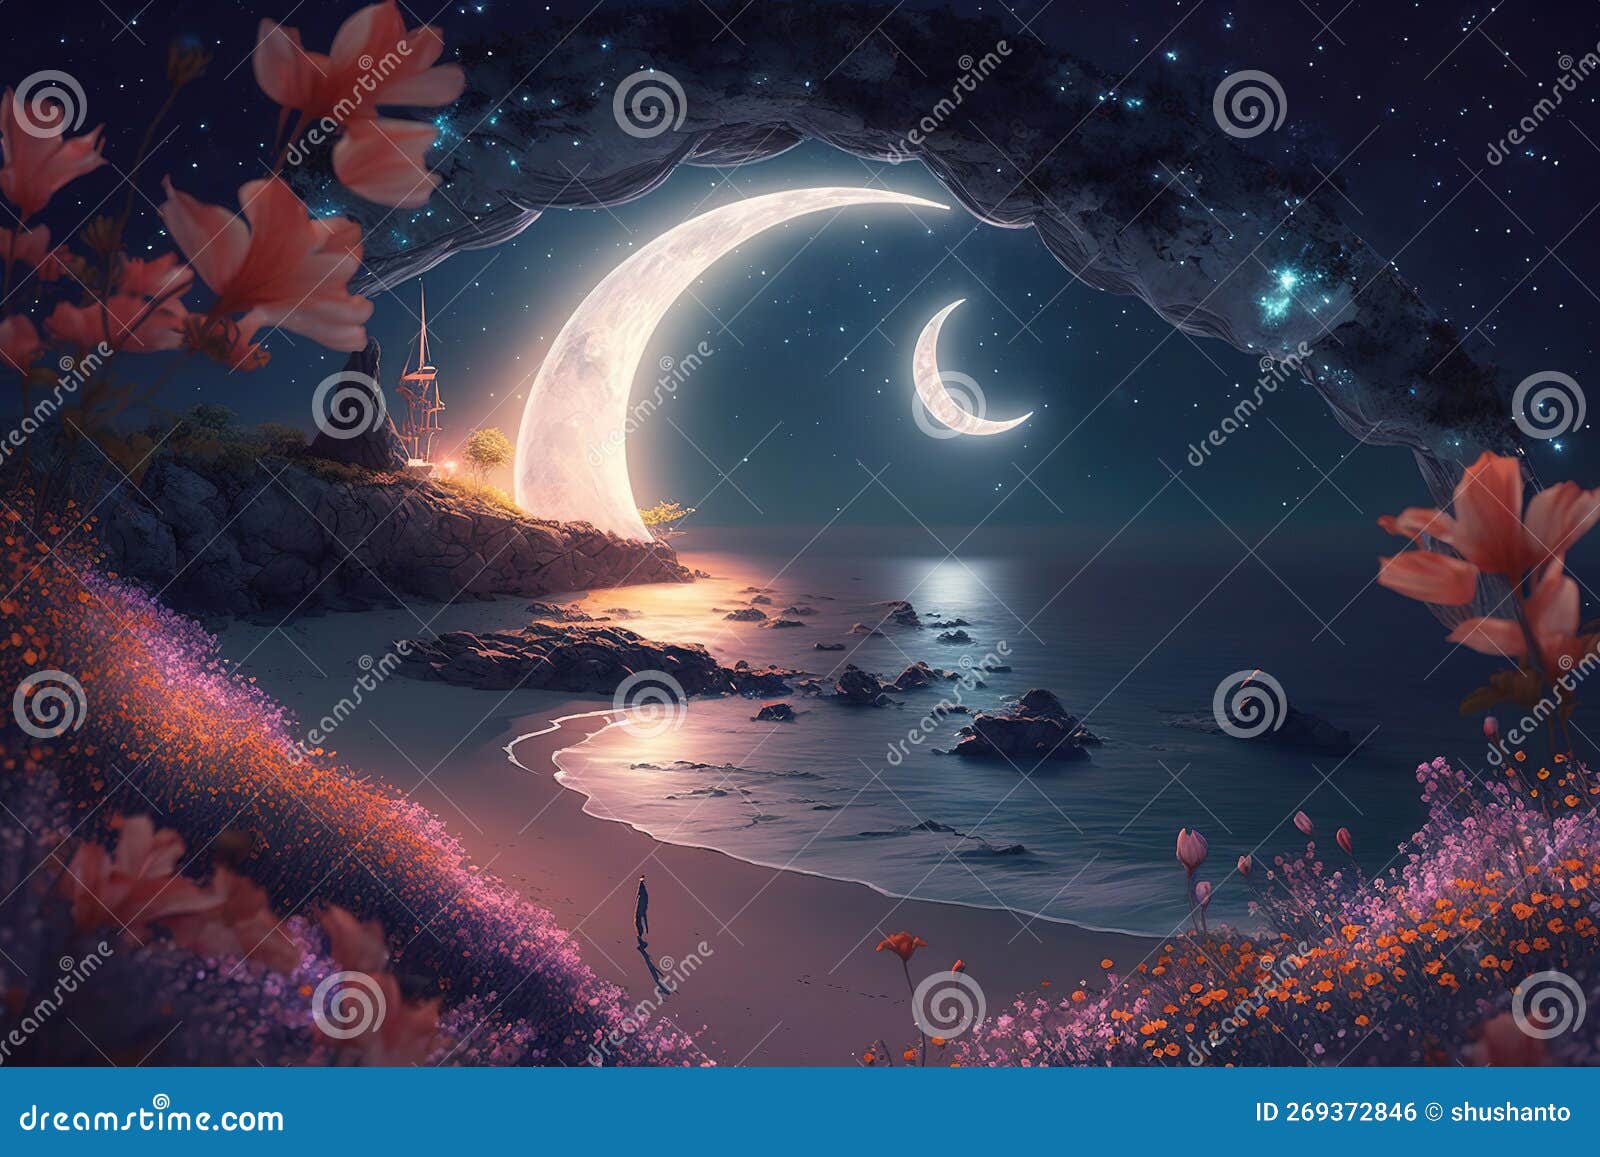 101 Big Hd Moon Images, Stock Photos & Vectors | Shutterstock